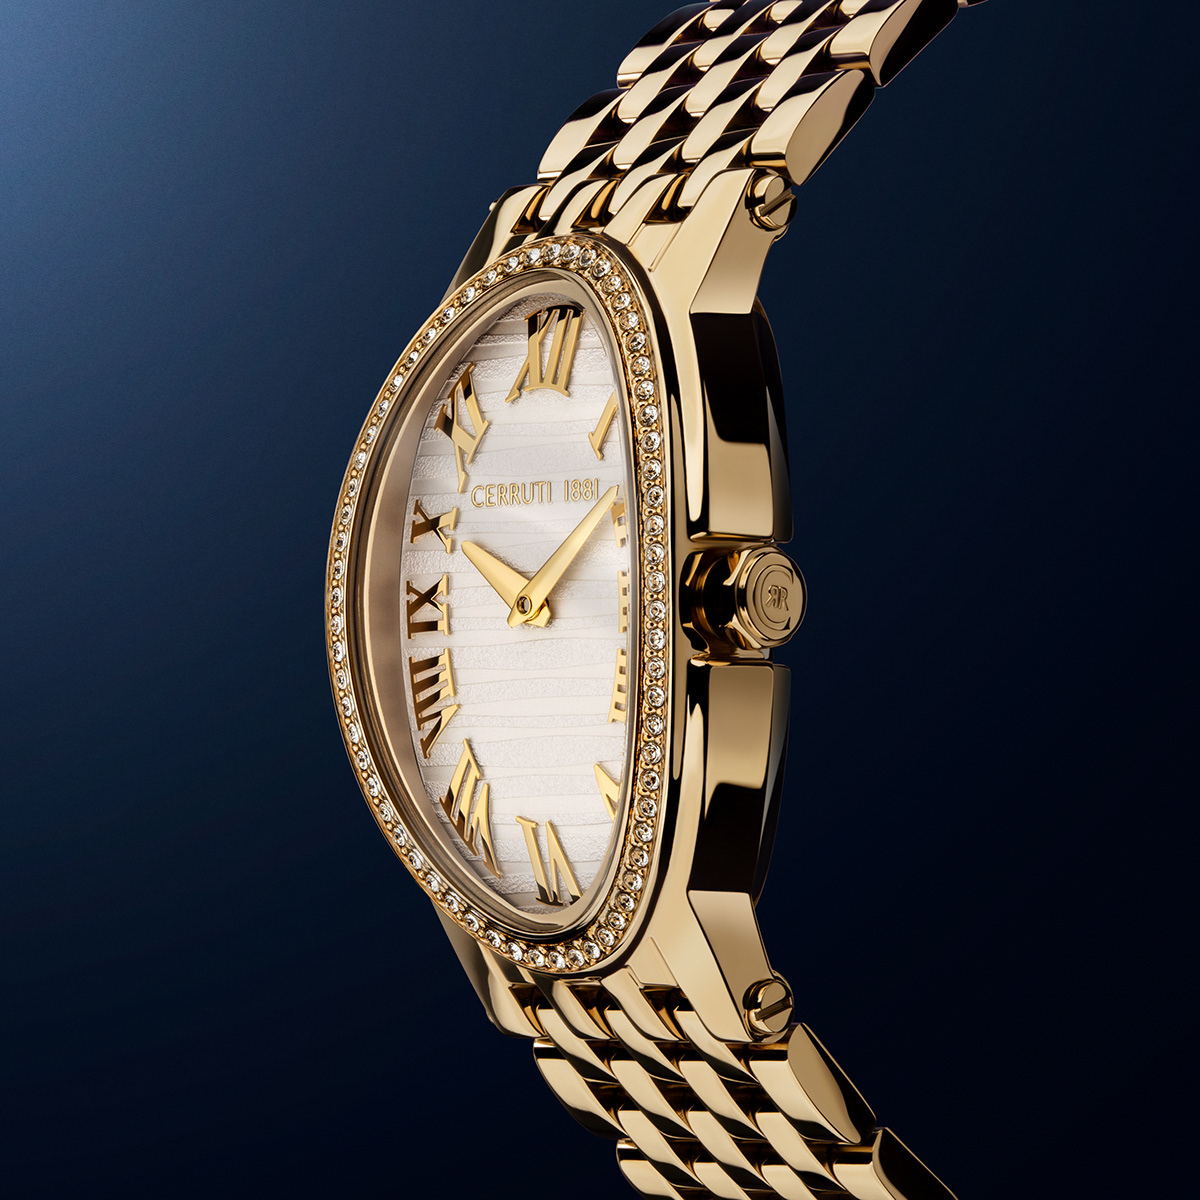 Cerruti luxury watch Watches